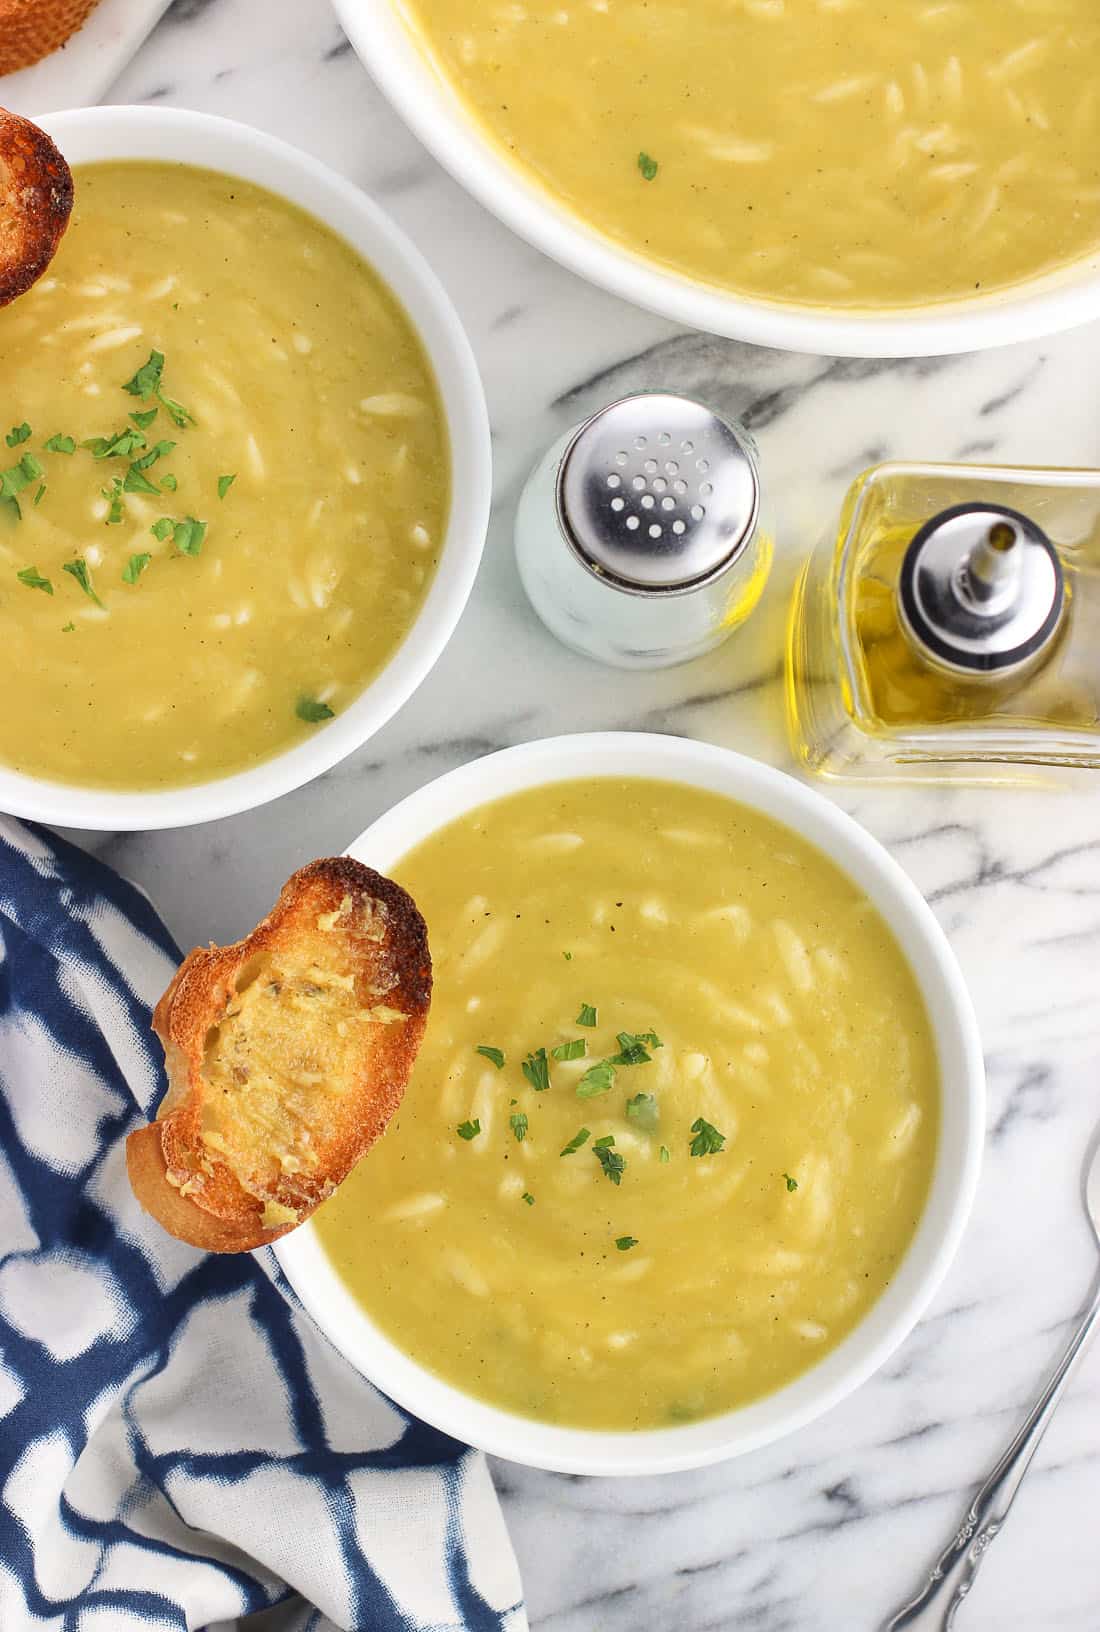 Bowls of potato leek soup with garlic crostini.